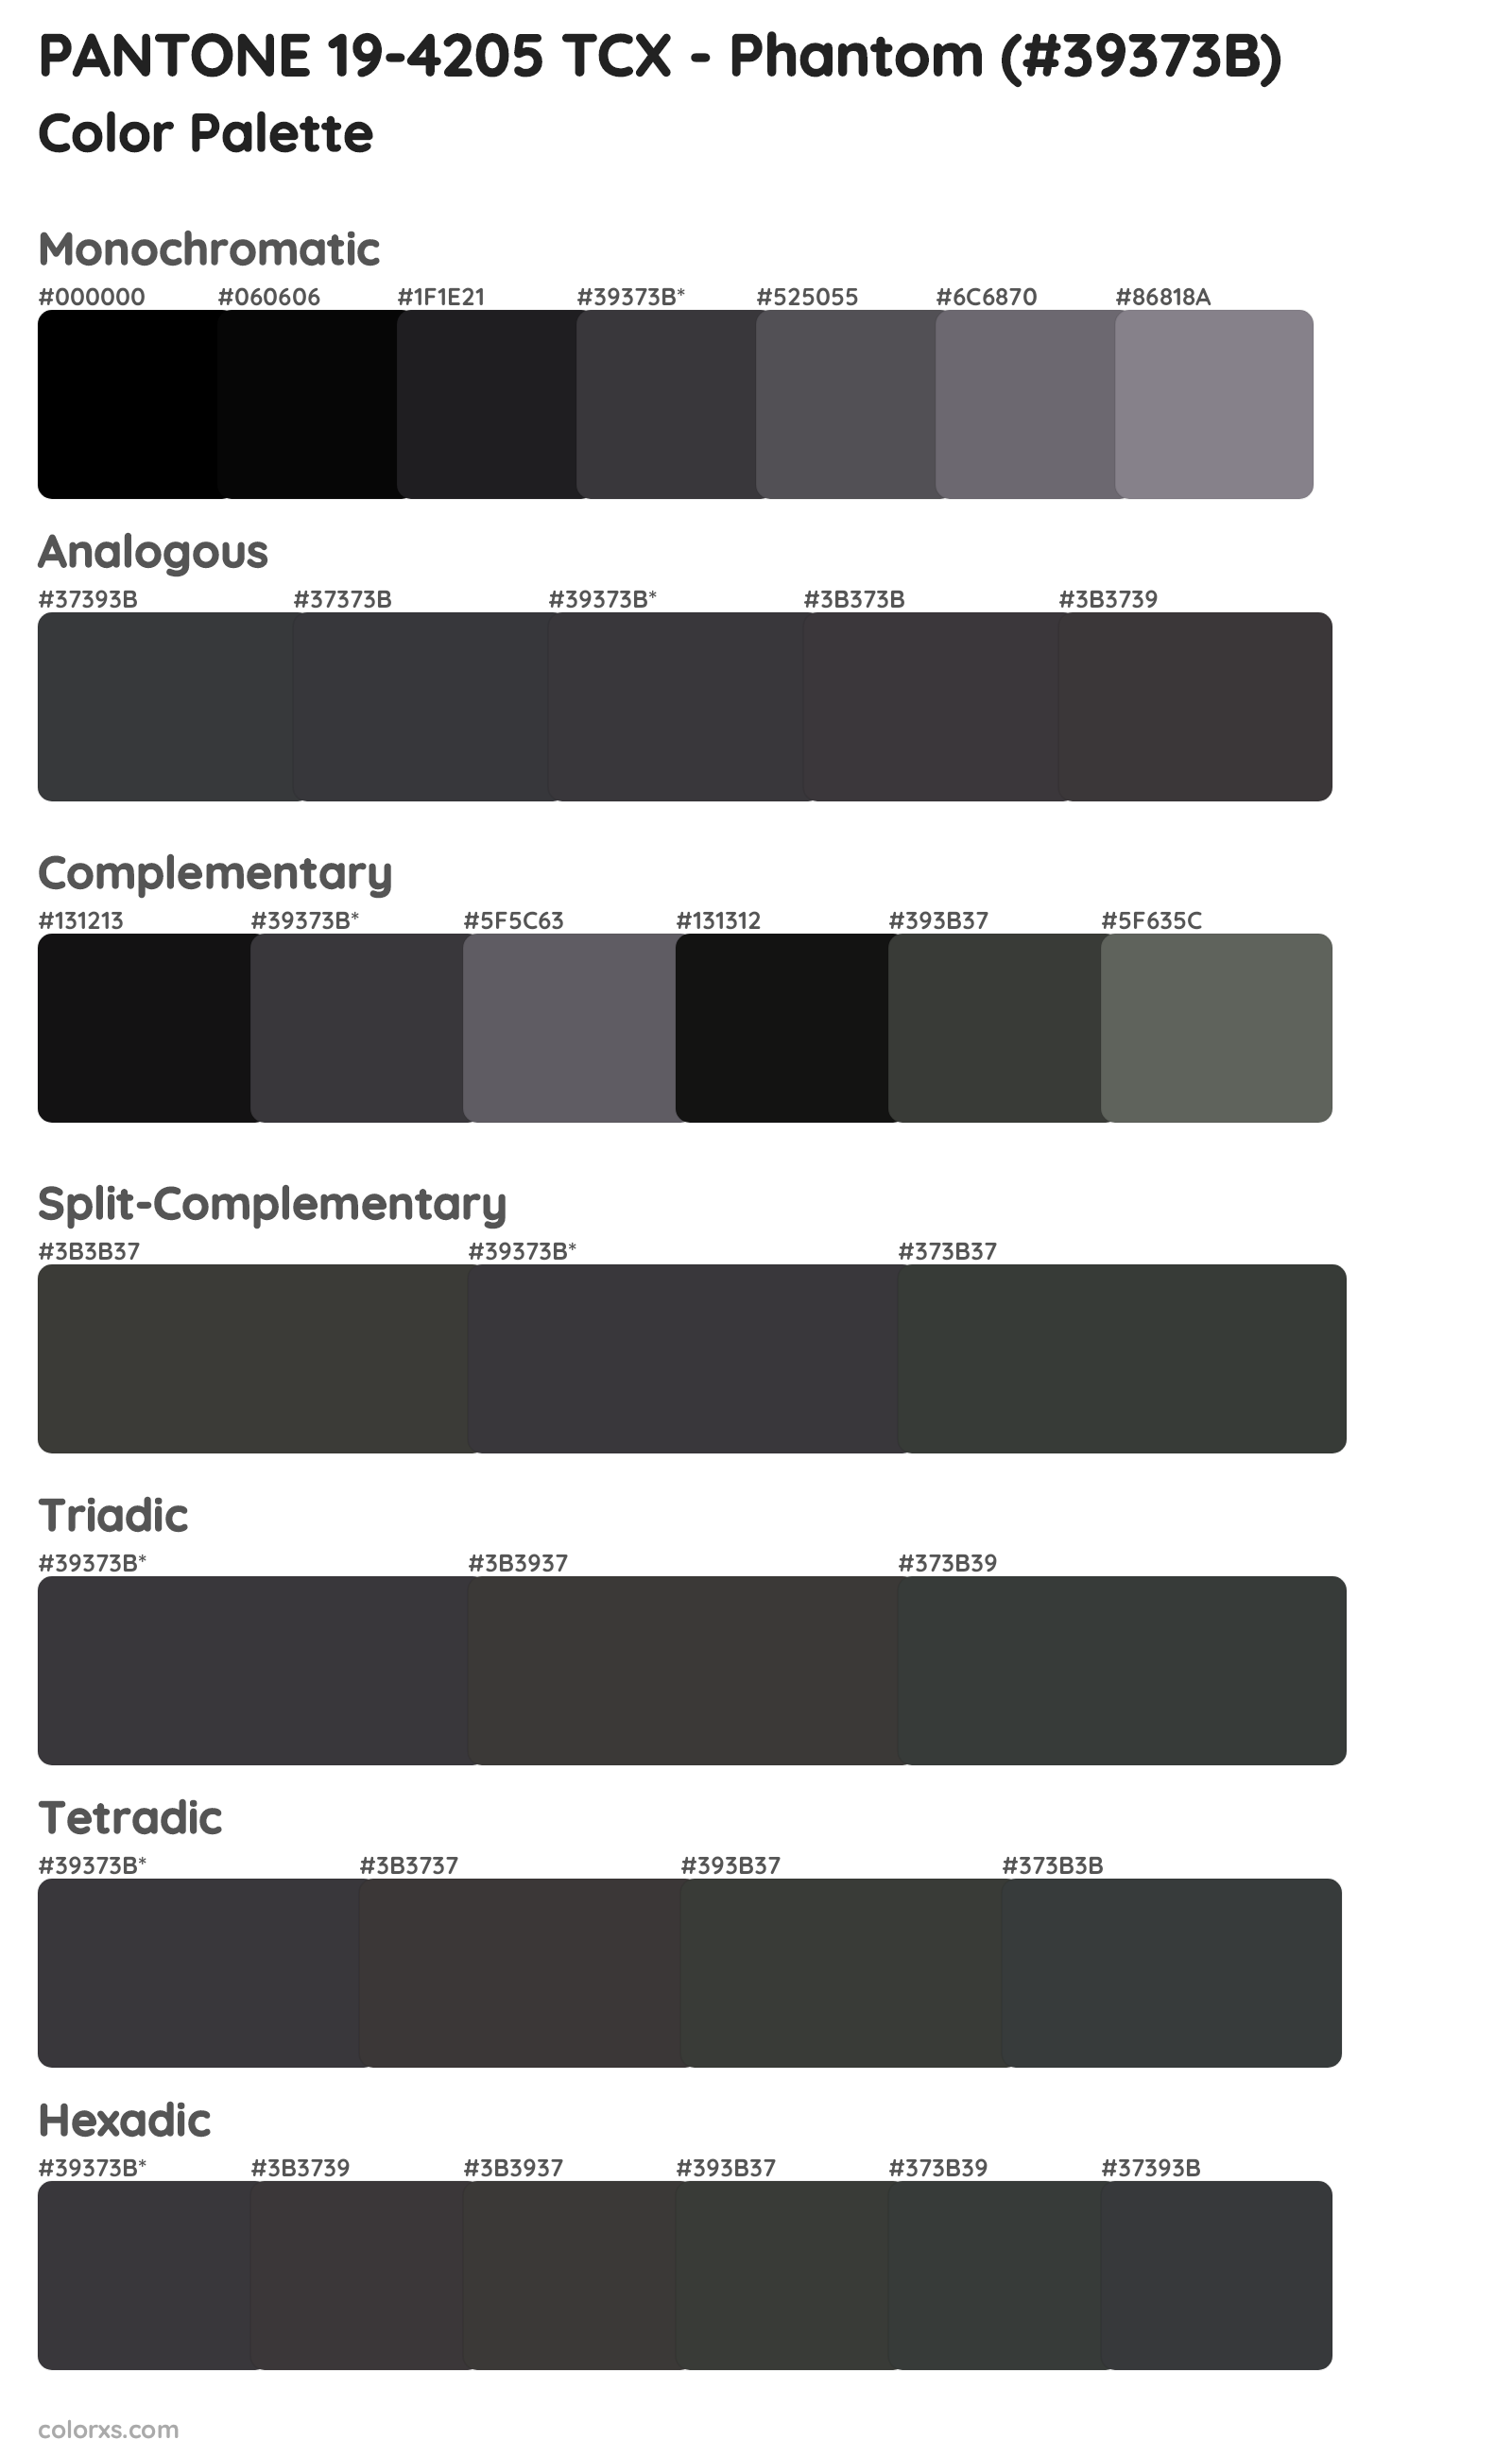 PANTONE 19-4205 TCX - Phantom Color Scheme Palettes